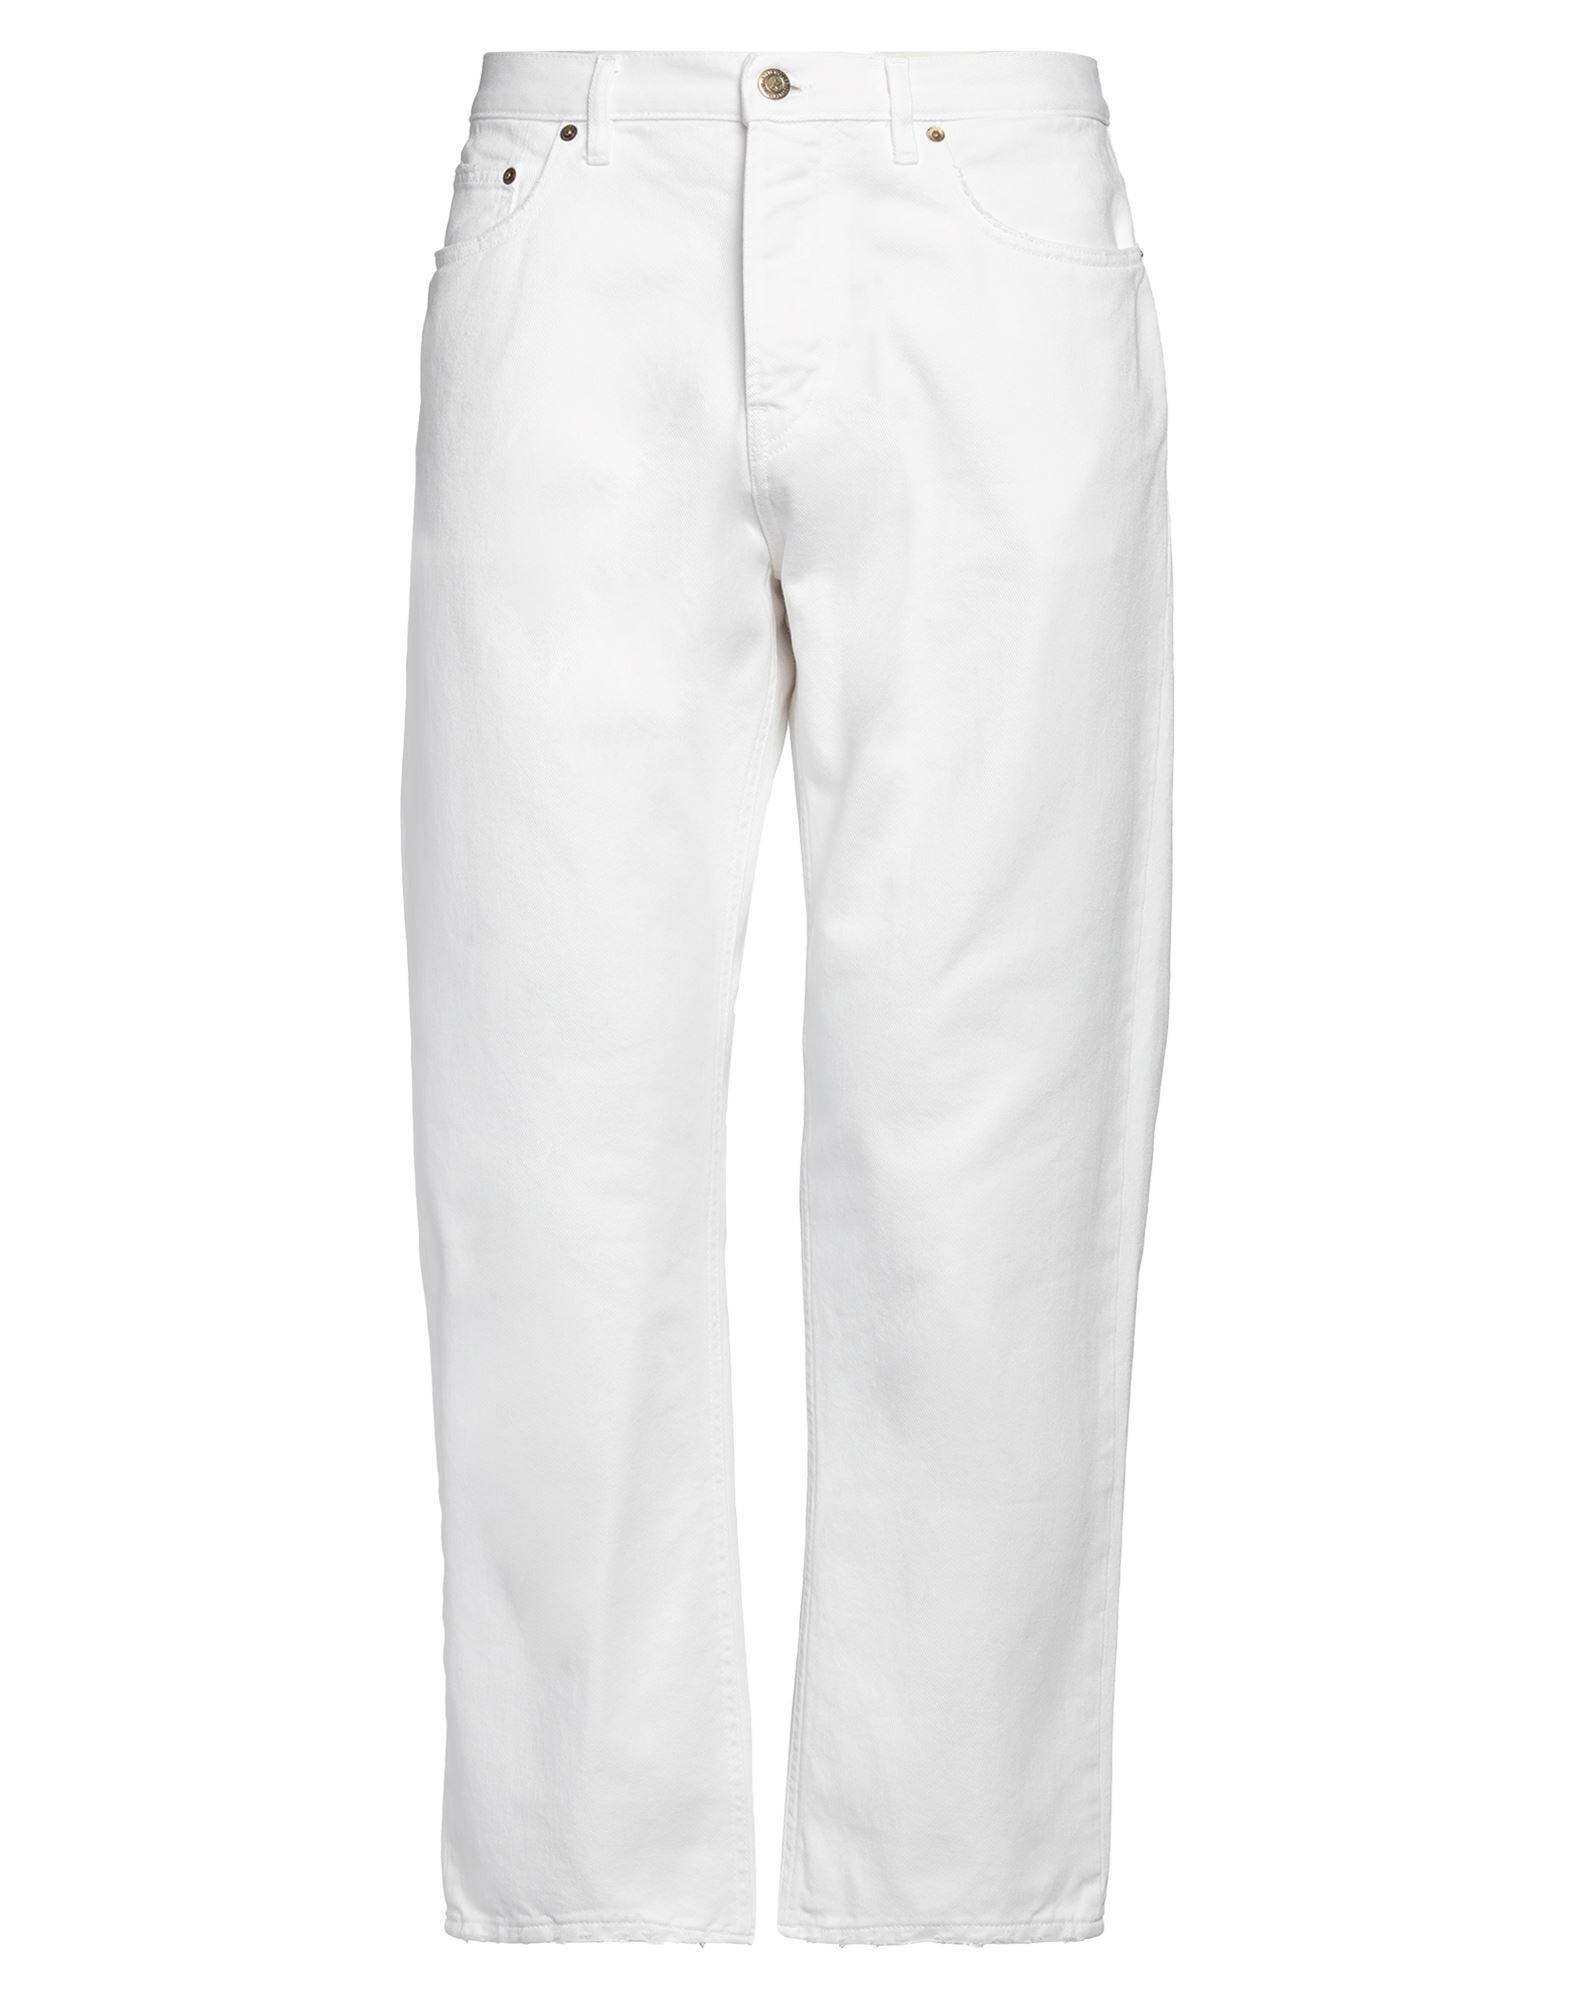 White Men's Denim Pants - 1